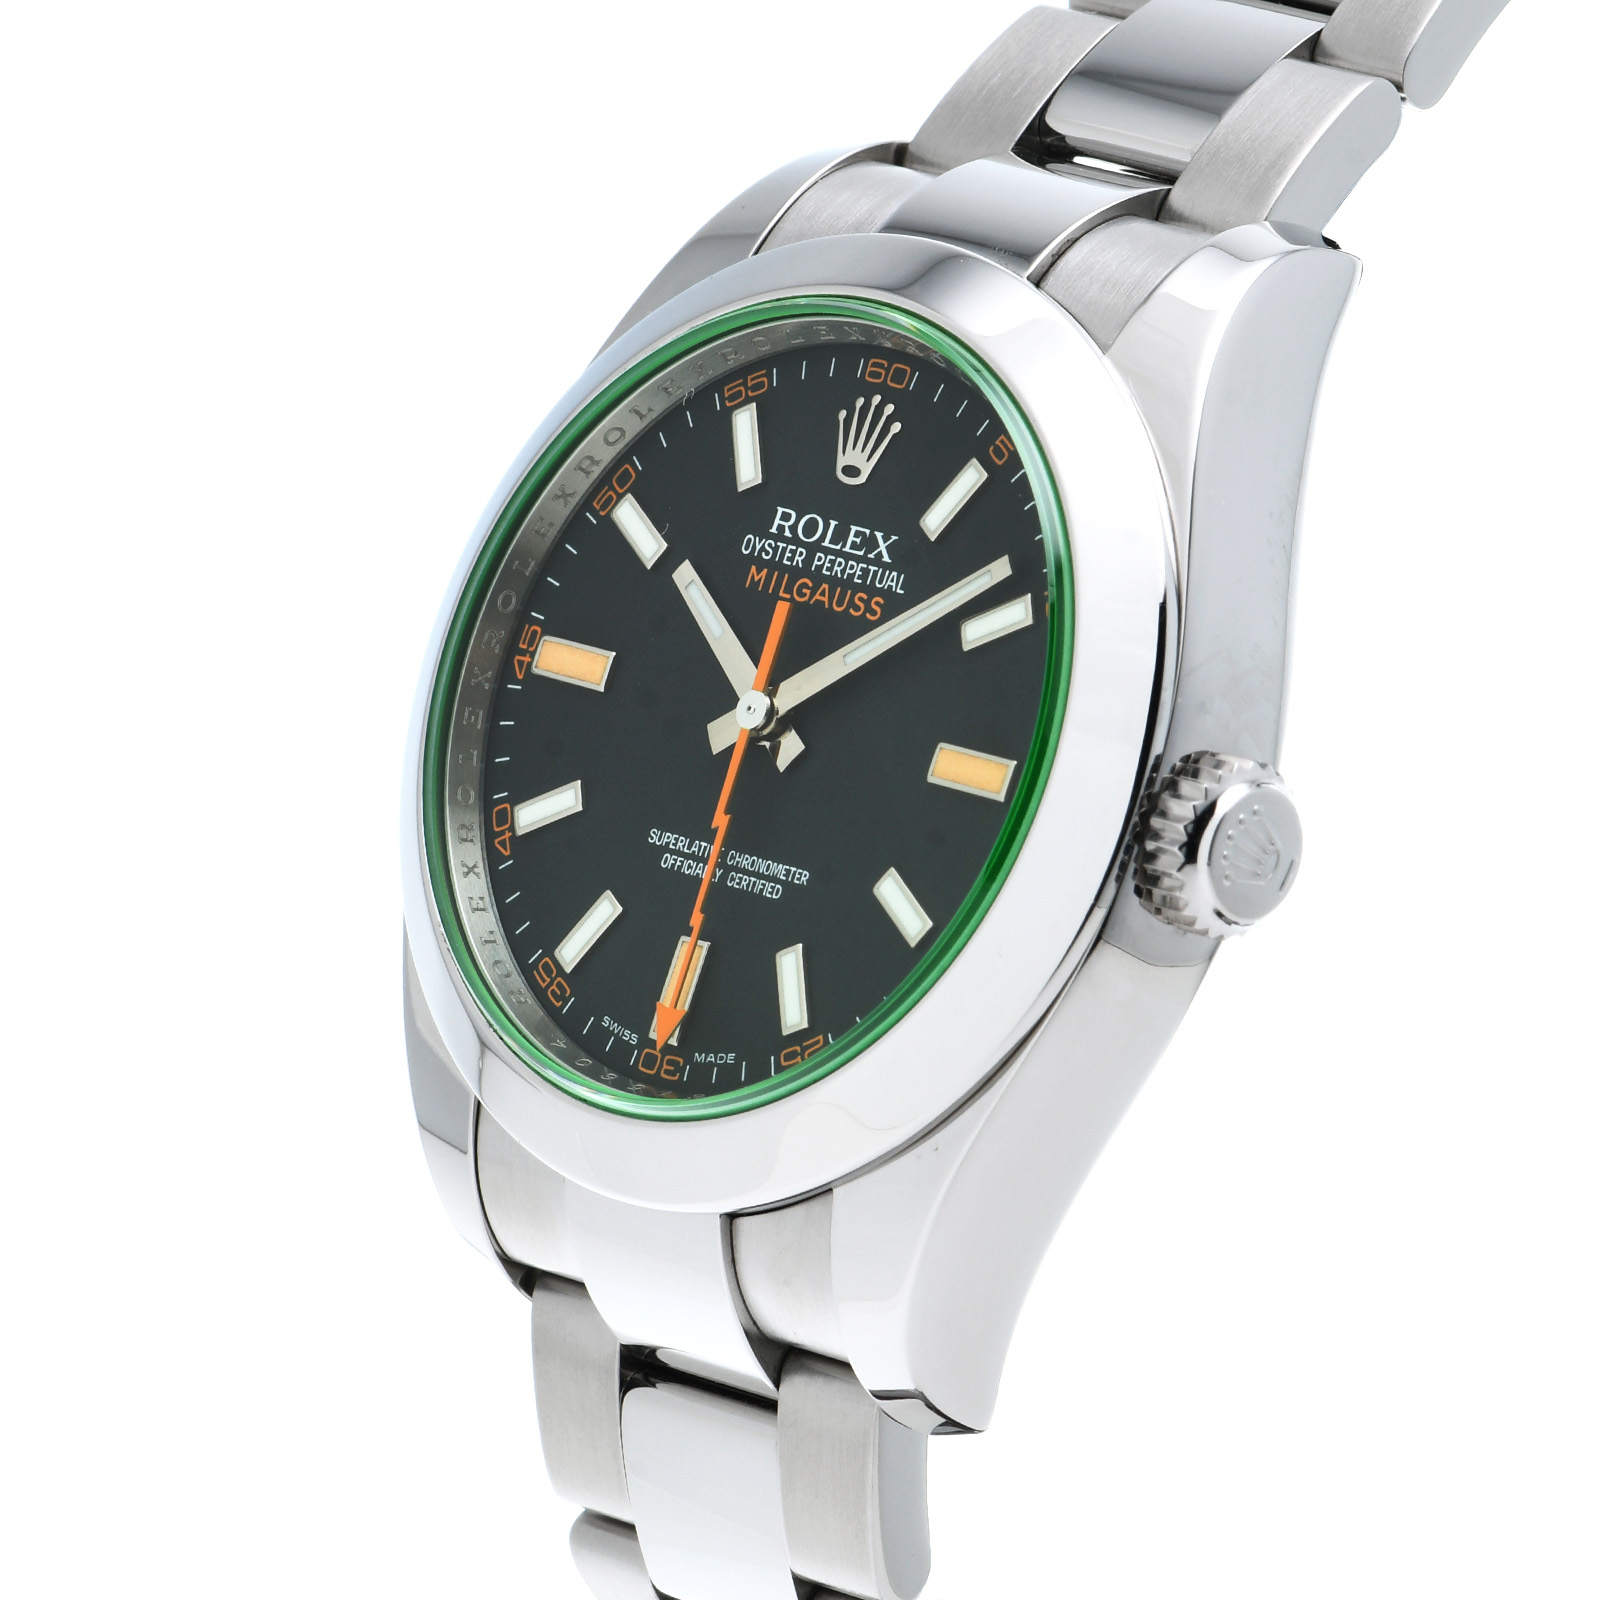 ロレックス ROLEX 116400GV V番(2008年頃製造) インテンスブラック メンズ 腕時計